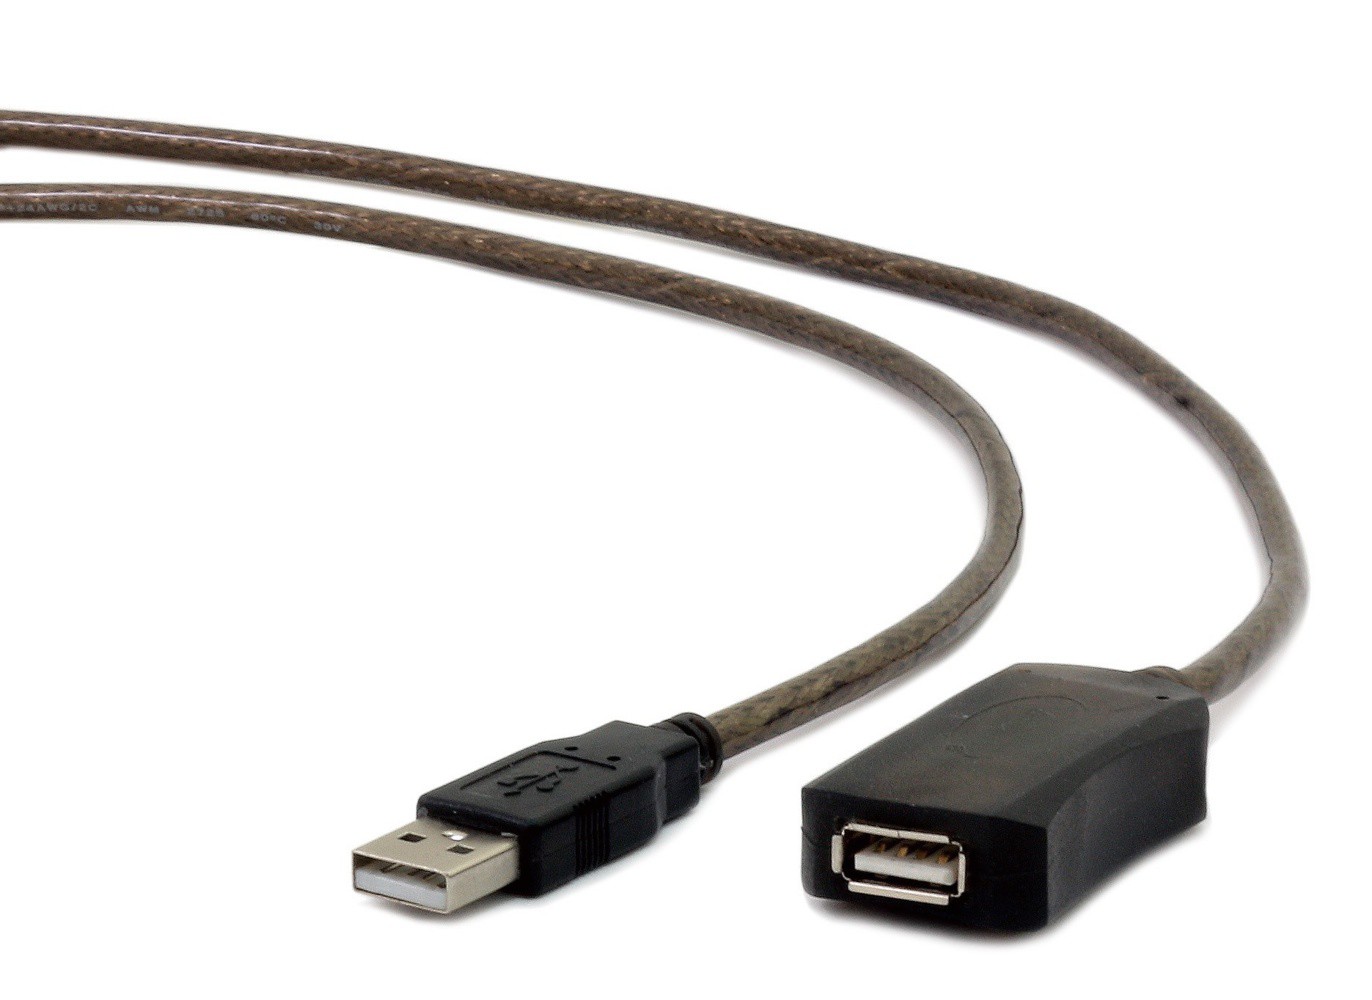   USB Cablexpert UAE-01-5M 5